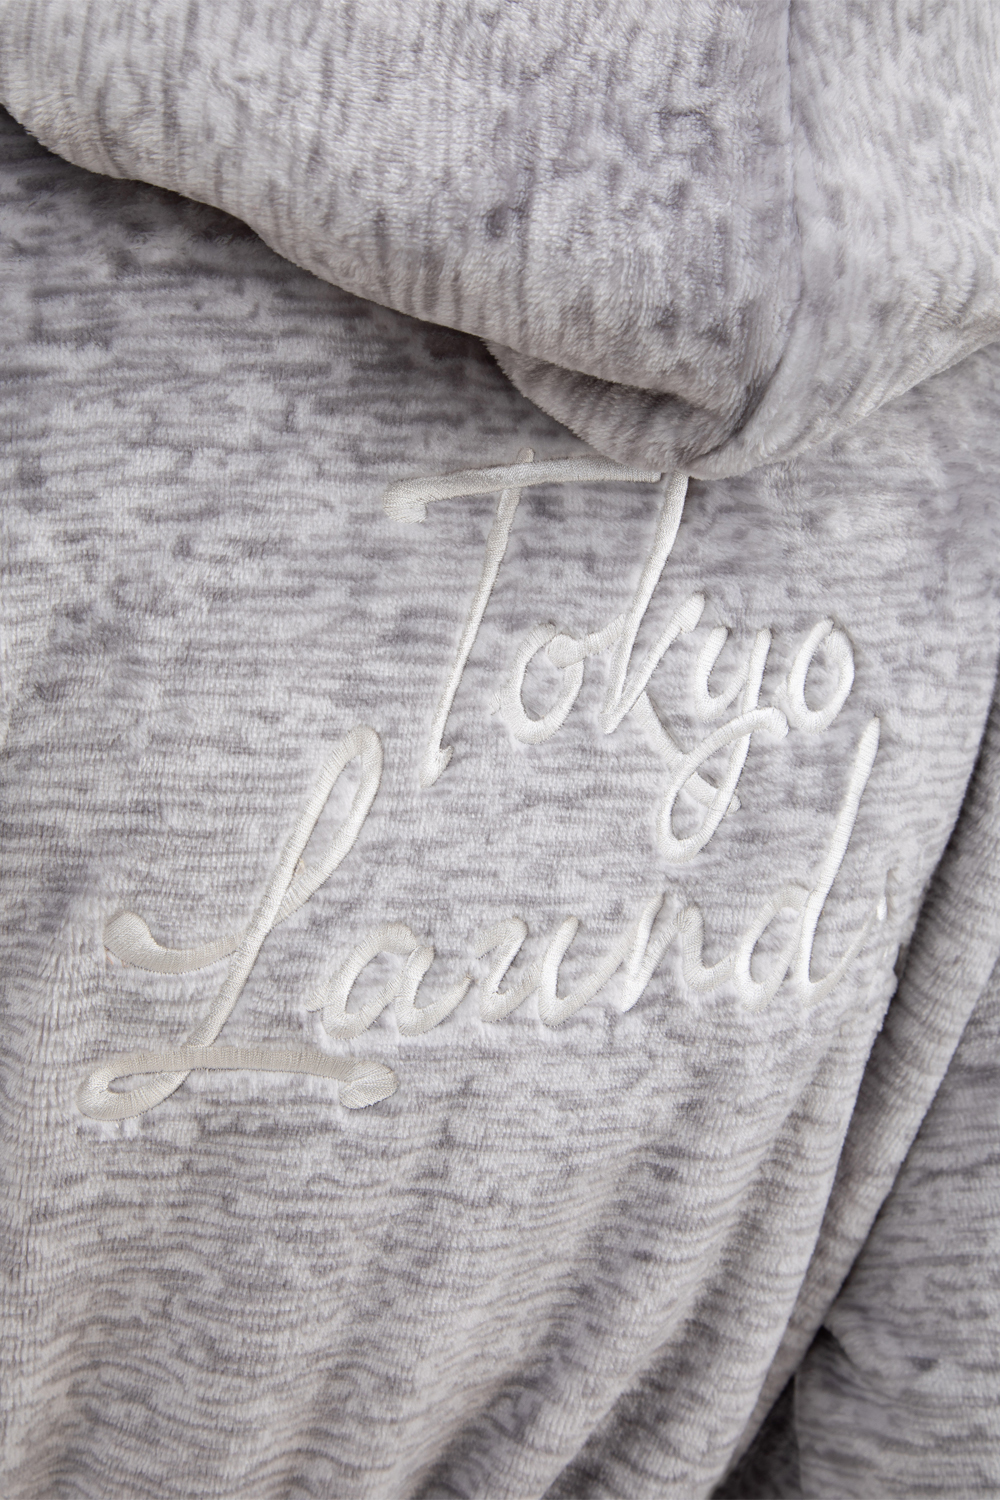 thumbnail 8 - Tokyo Laundry Womens Deluxe Fleece Dressing Gowns Hooded Bath Robe Nightwear